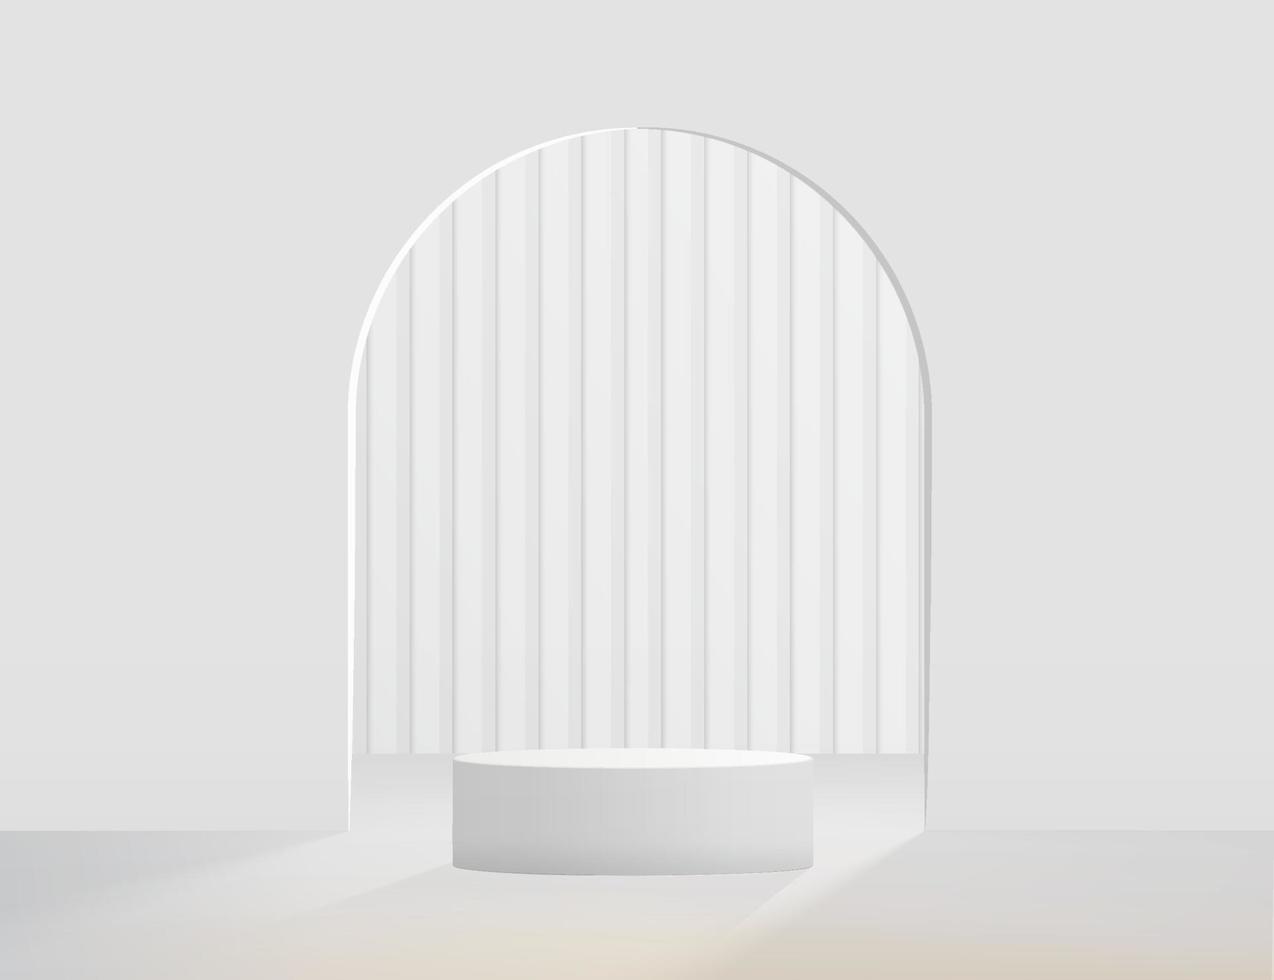 podium de piédestal de cylindre 3d réaliste blanc abstrait avec toile de fond en forme d'arche. plate-forme géométrique de rendu vectoriel abstrait avec superposition d'ombre. présentation de l'affichage du produit. scène minimale.